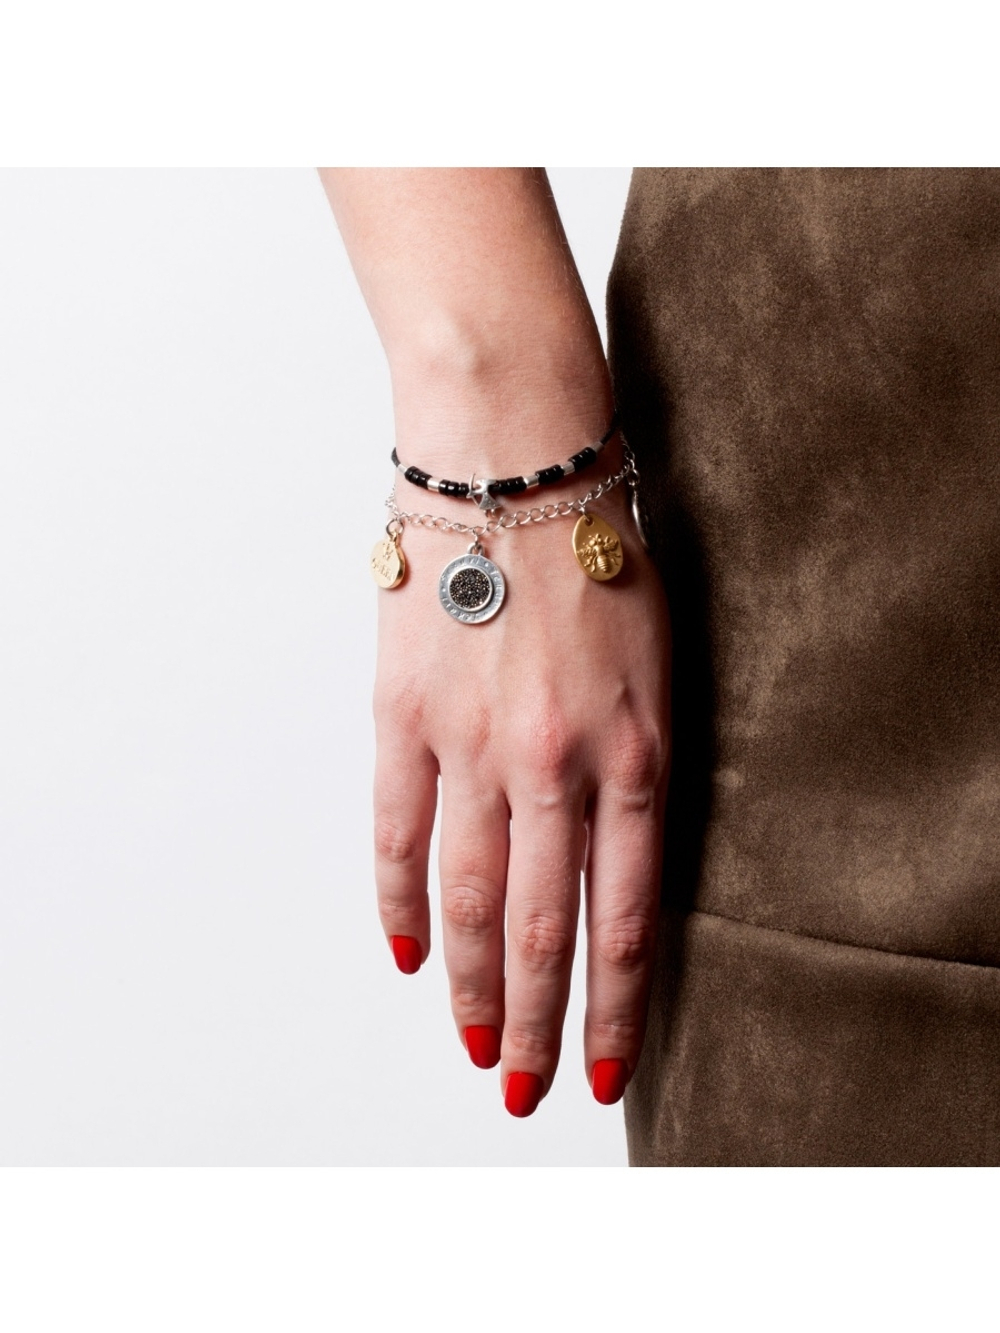 "Fabric" браслет в серебряном покрытии из коллекции "Dreams collection" от Jenavi с замком карабин